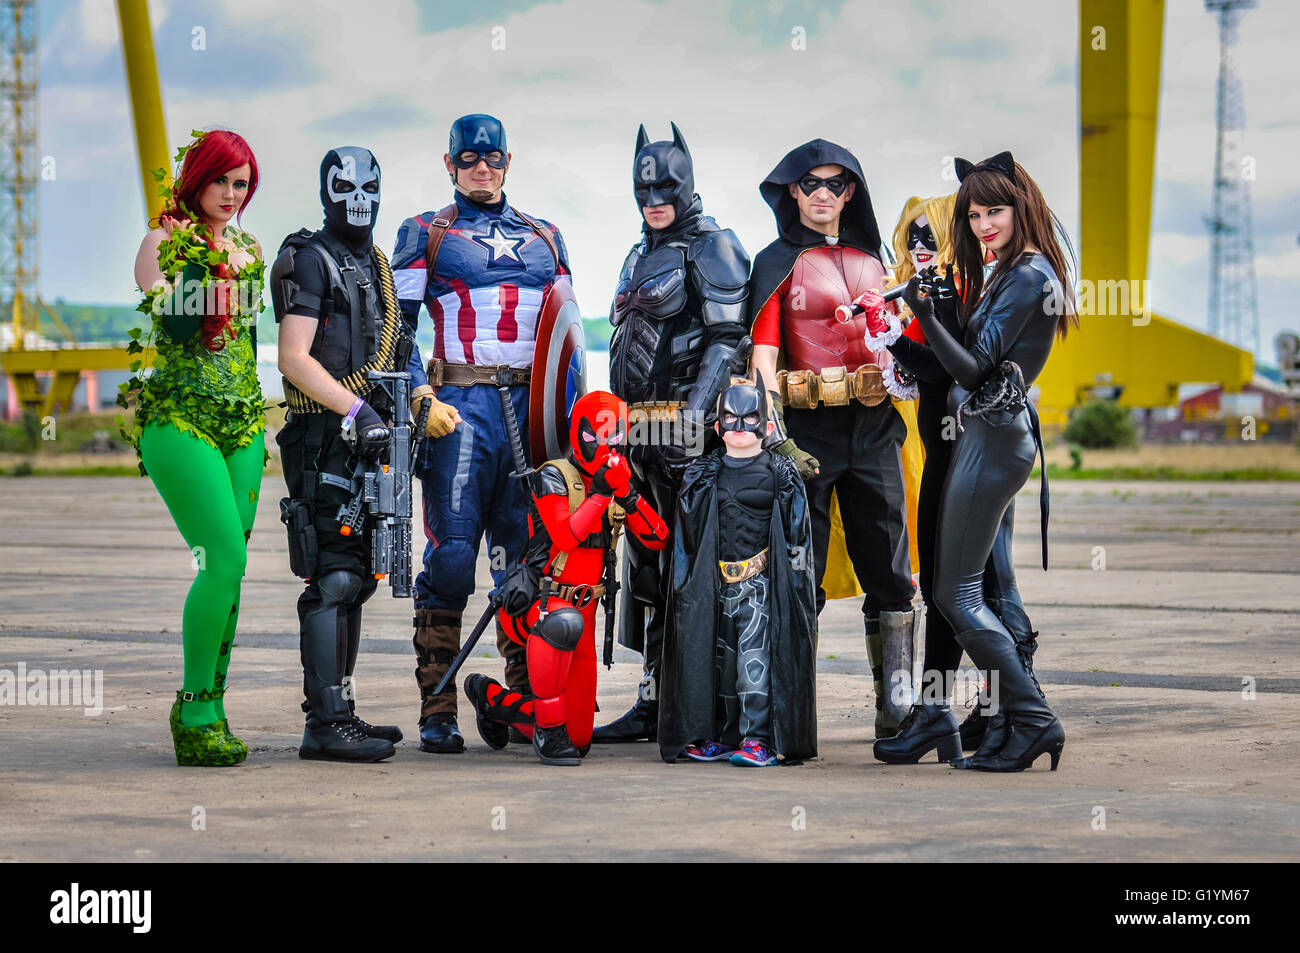 Les super-héros se réunissent à Belfast au Comicon Belfast, en Irlande du Nord, 14 mai 2016 (Poison Ivy, mort, Captain America, Batman, Robin, Catwoman, Harley Quinn. [Avant] Deadpool, Batman (enfants)) Banque D'Images